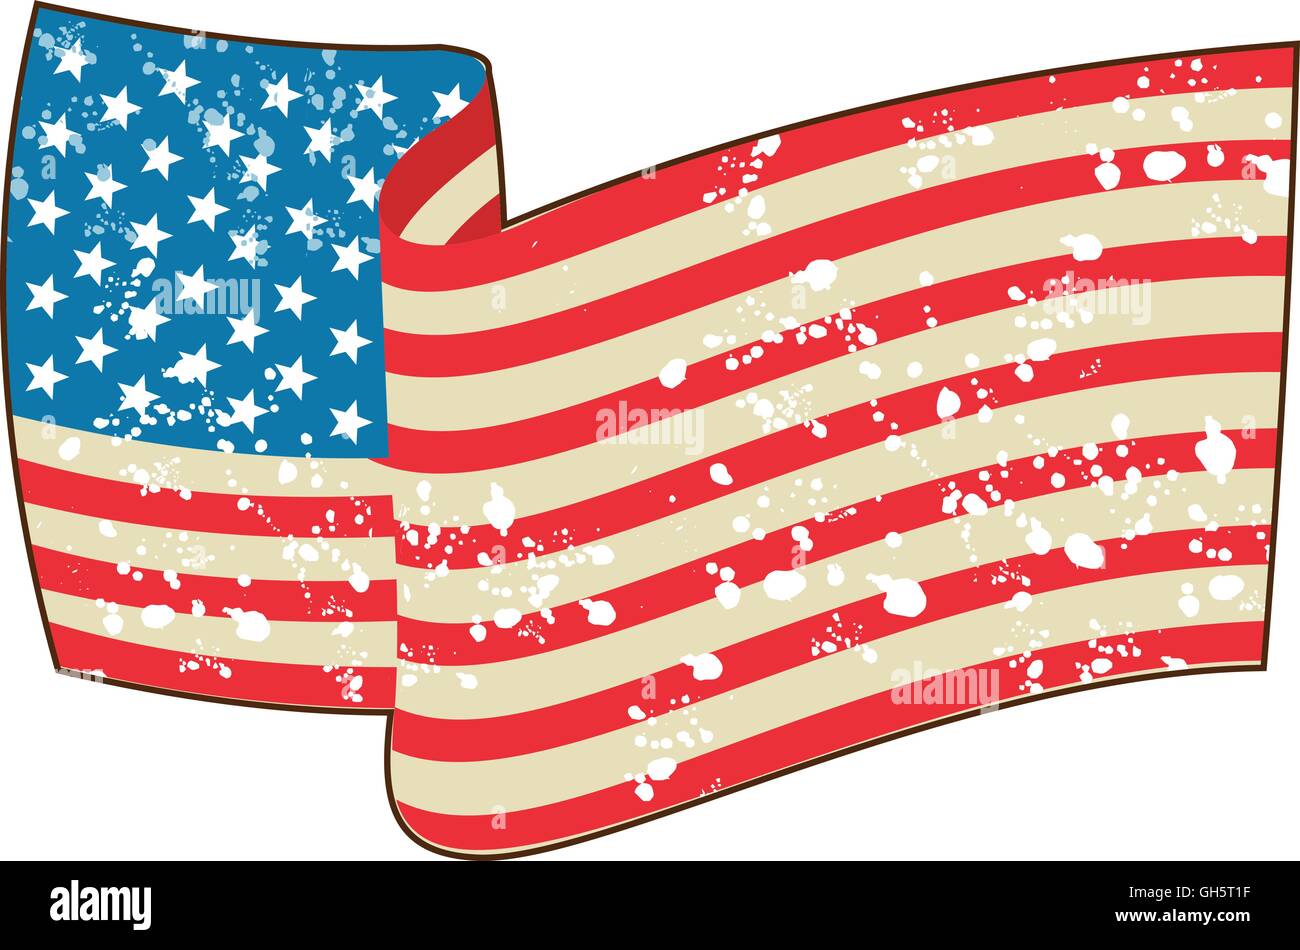 Illustrazione di un grunge usa bandiera americana a stelle e strisce damascato isolato su sfondo bianco fatto in stile retrò. Illustrazione Vettoriale